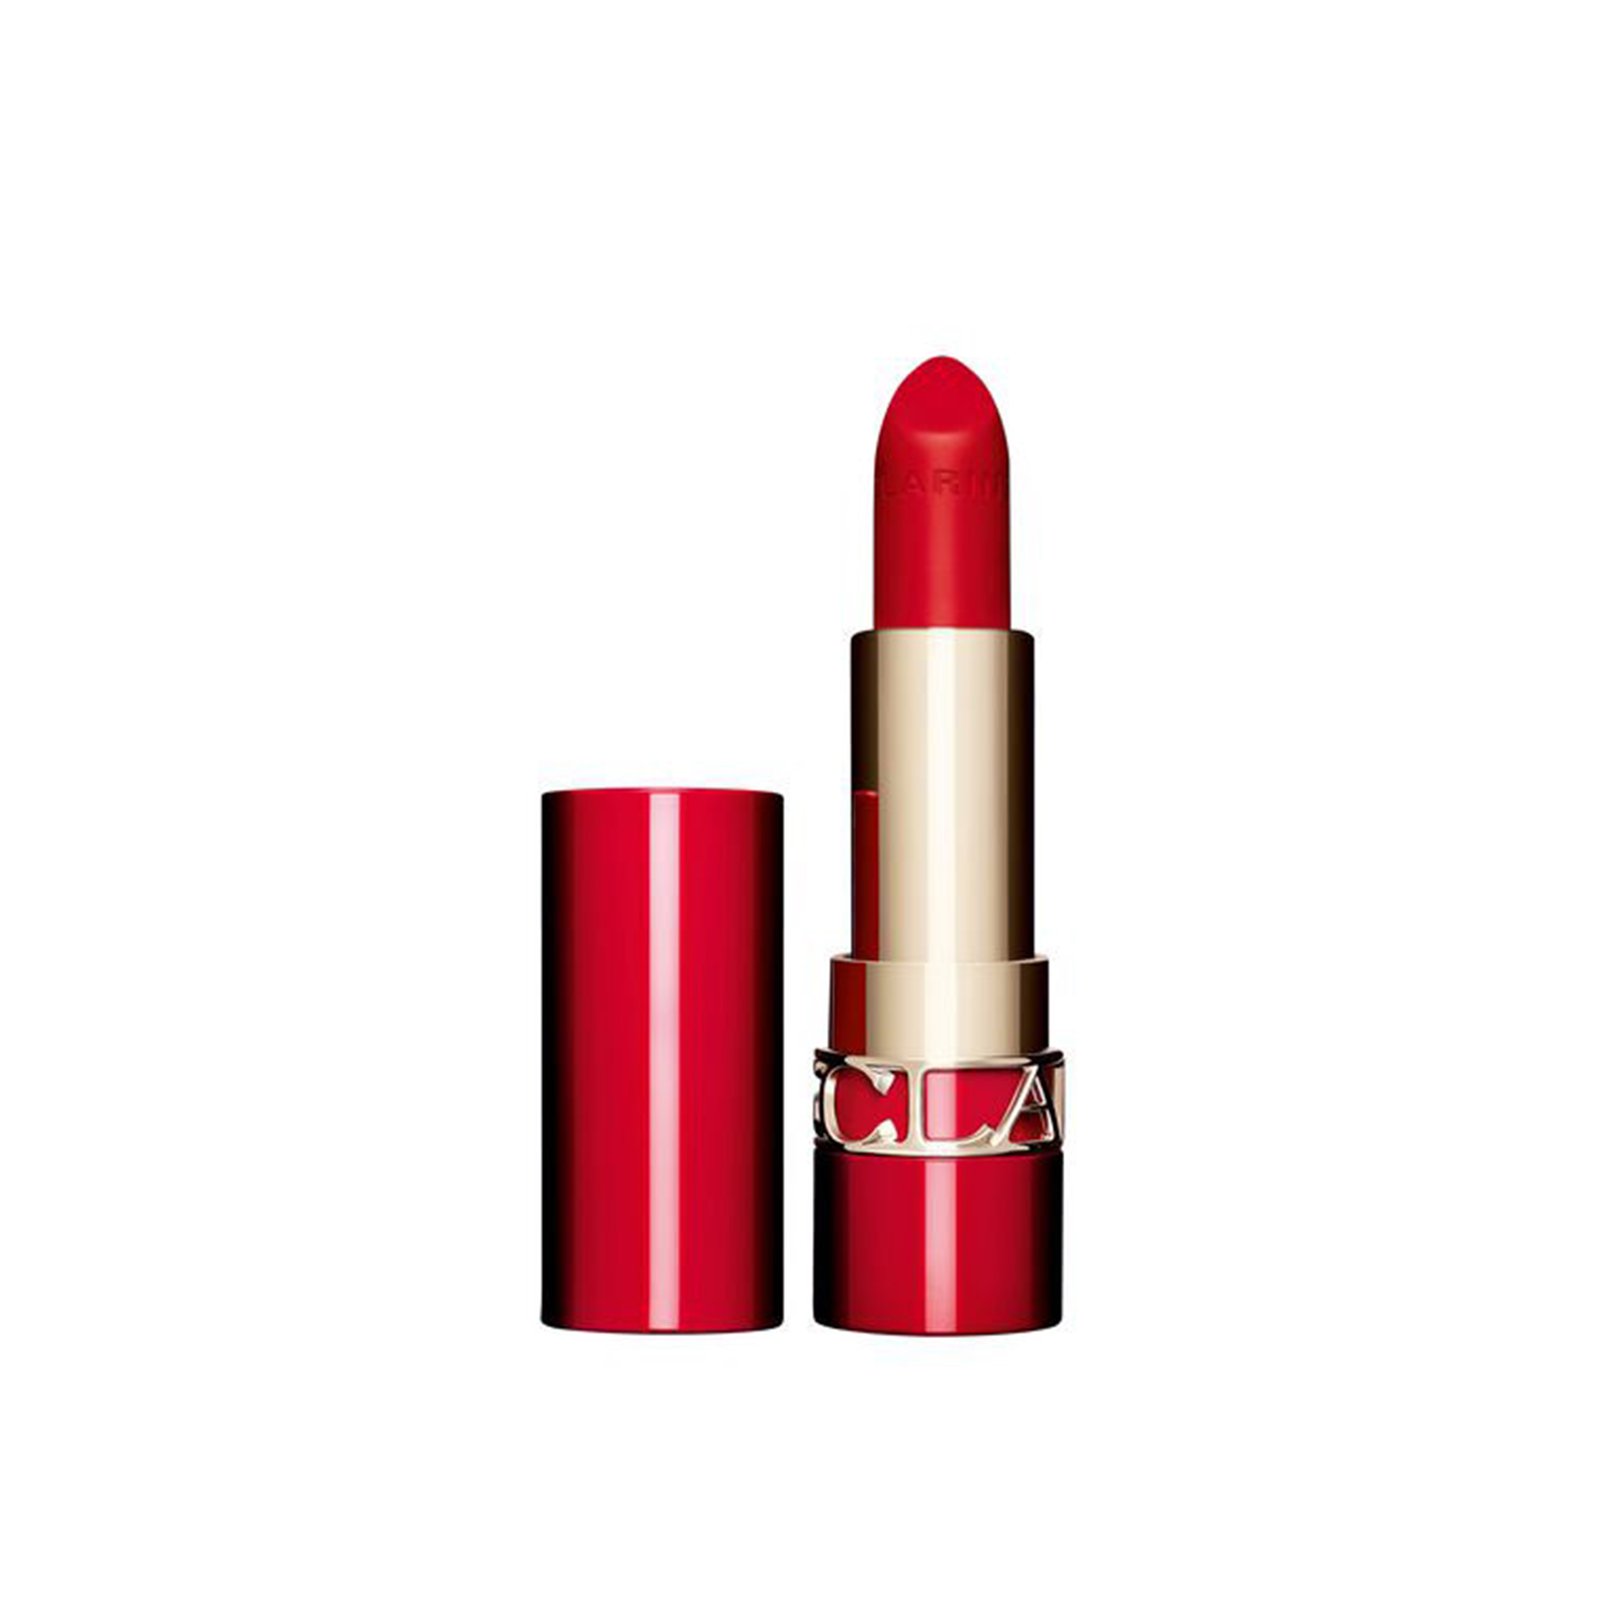 Clarins Joli Rouge Velvet Matte Lipstick 742V Strawberry 3.5g